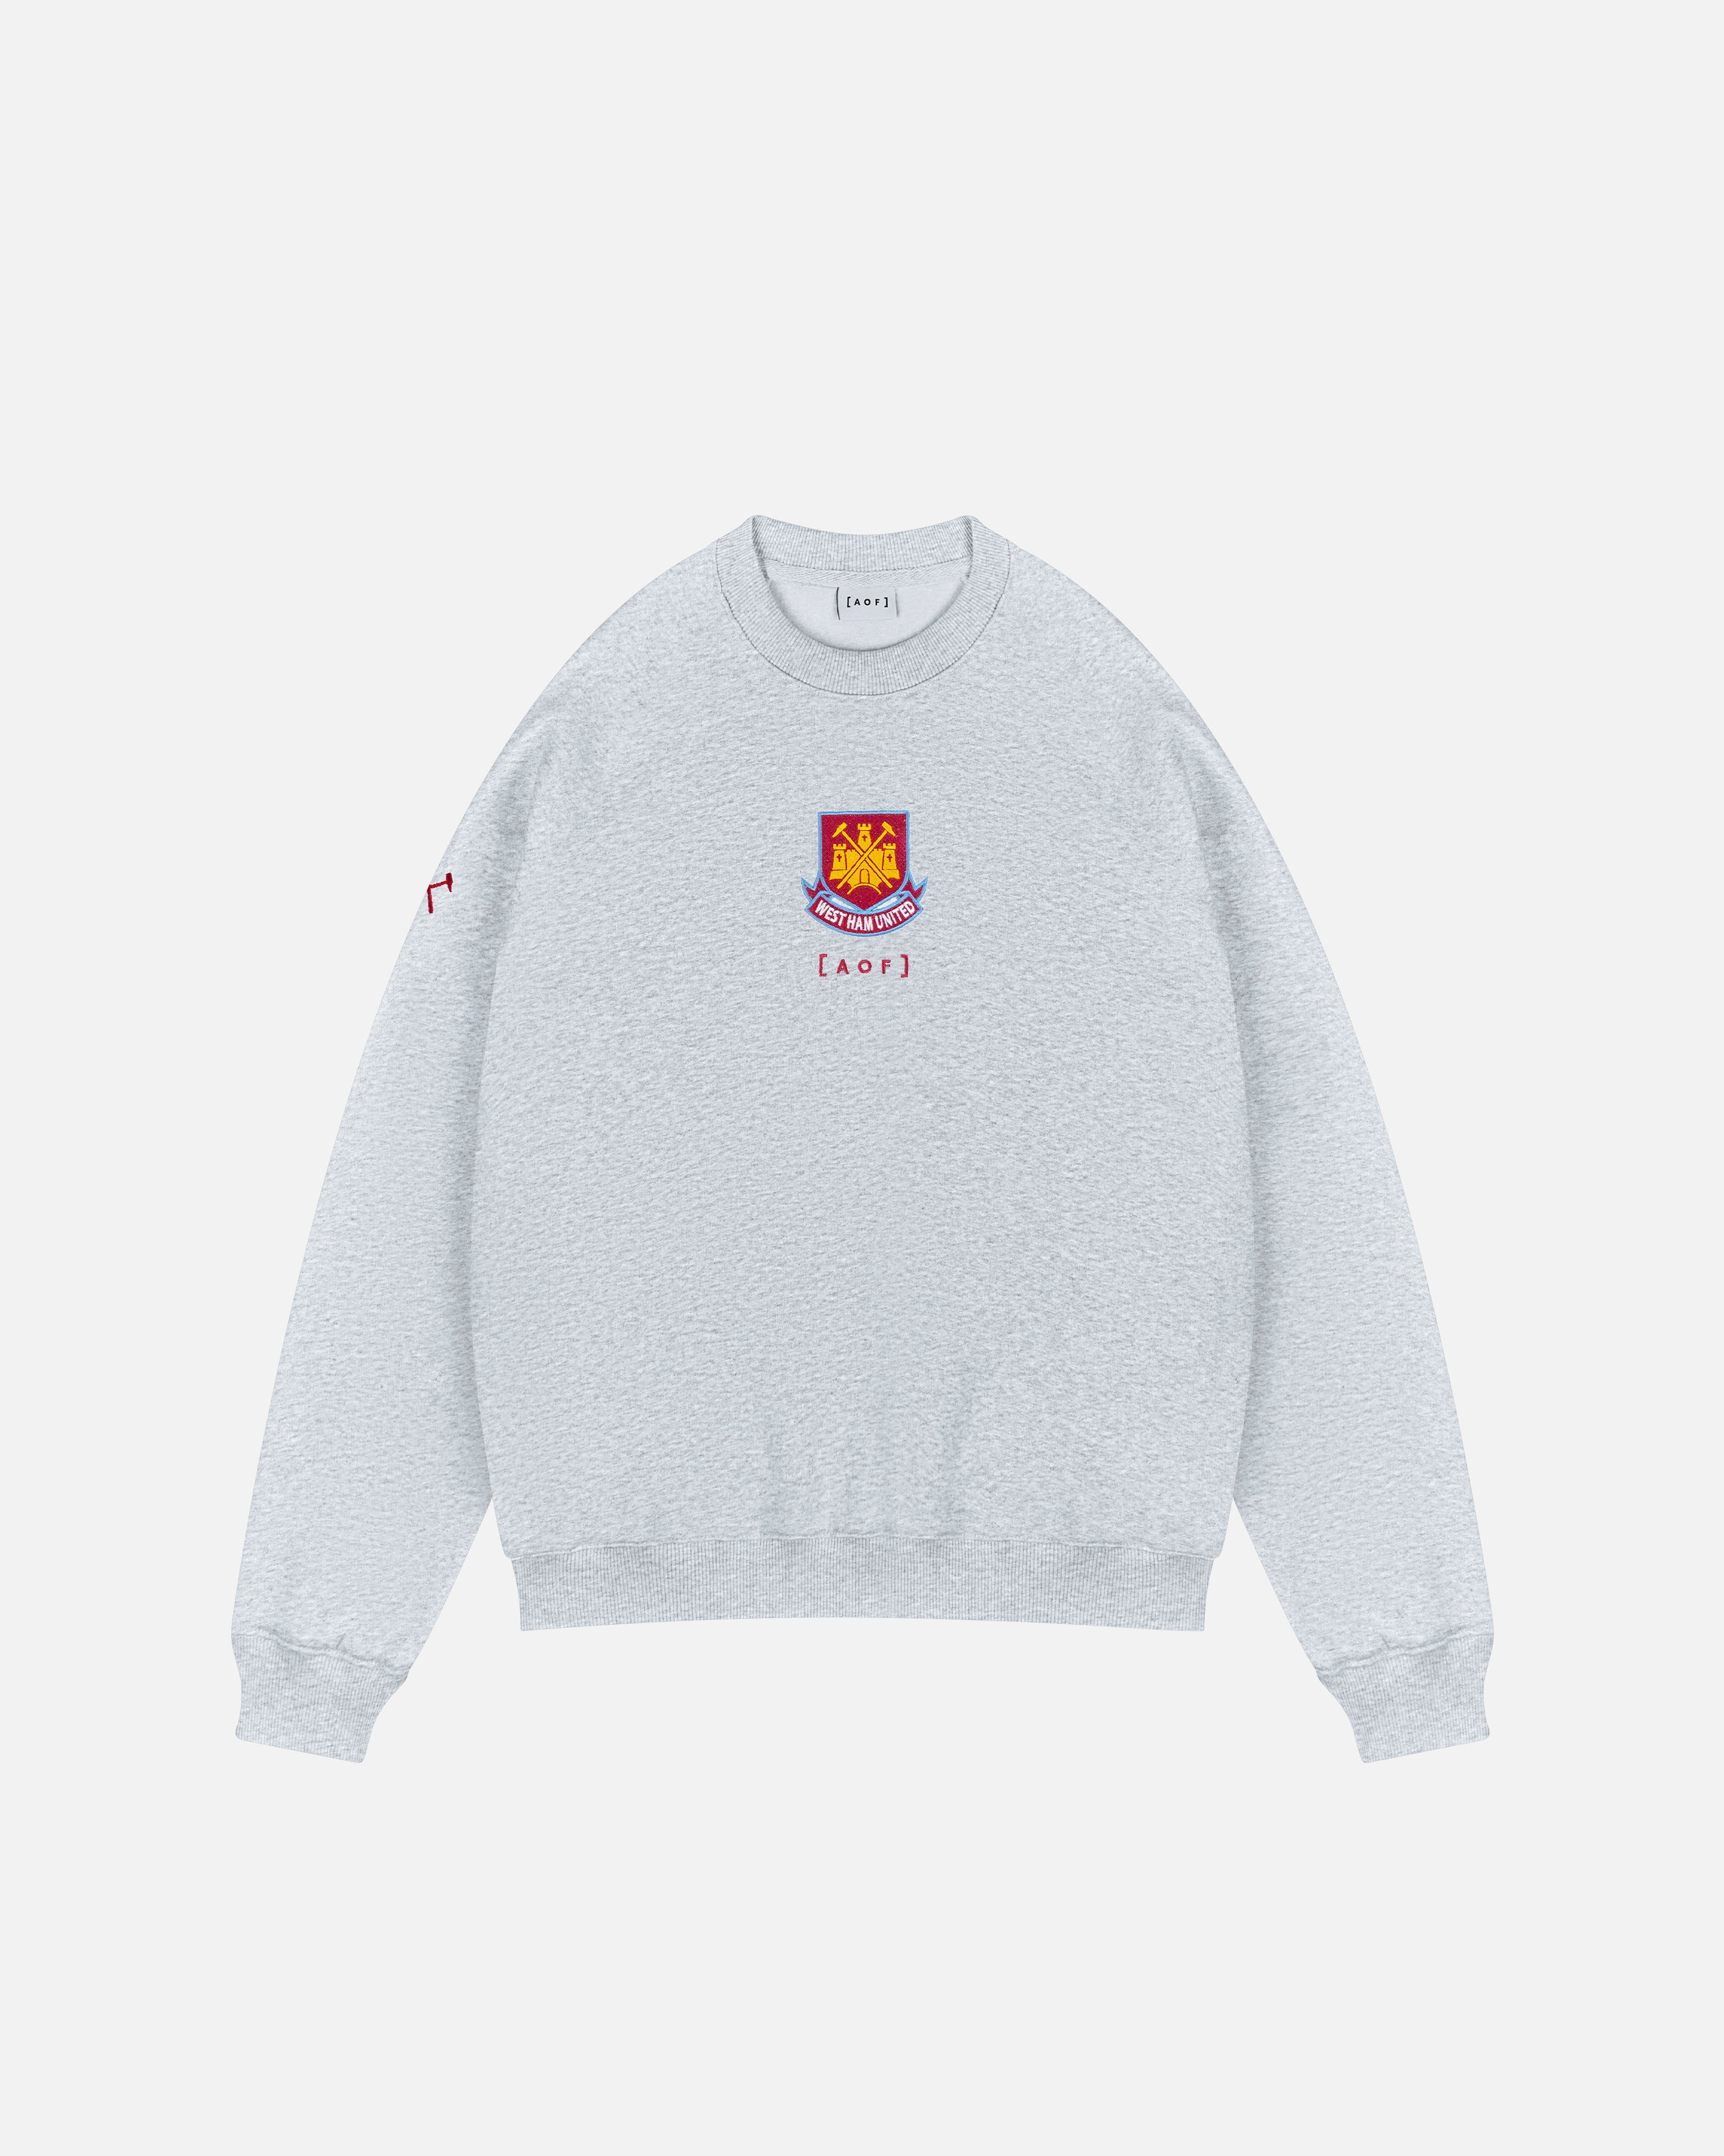 West Ham x AOF Grey Sweatshirt